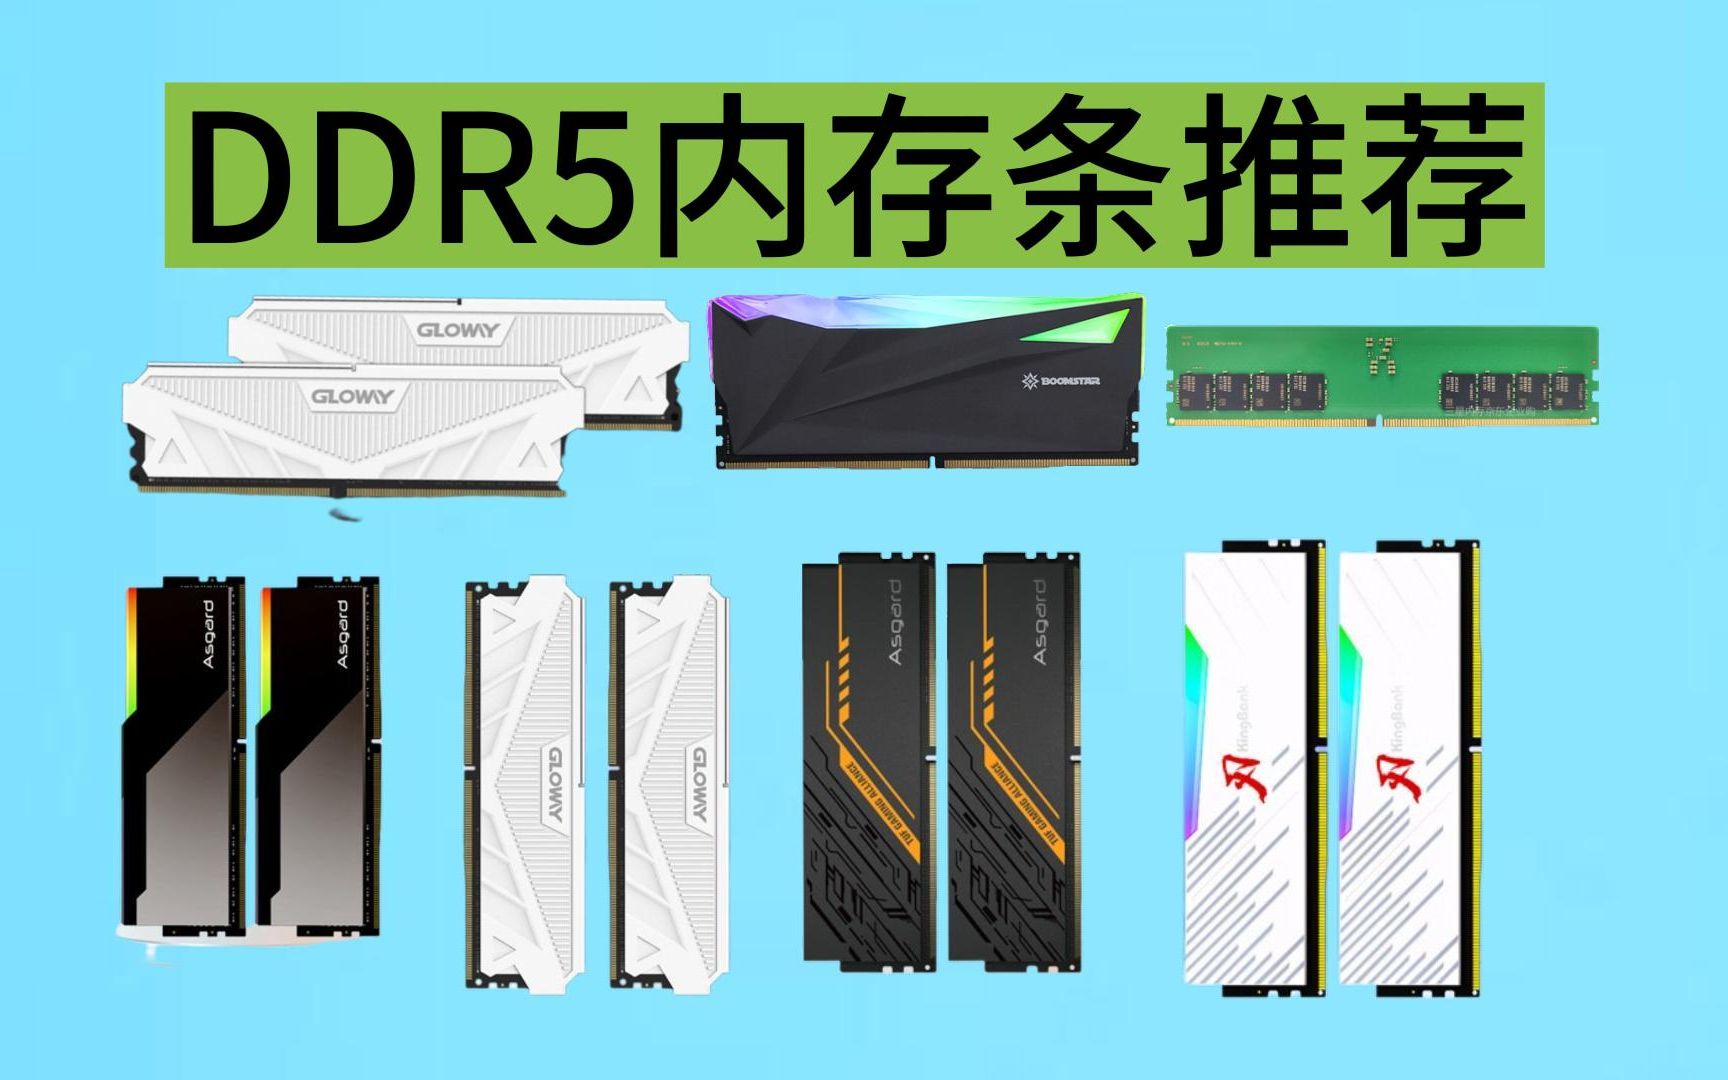 三星 DDR5 普条：电脑游戏爱好者的超频神器，引发速度与激情风暴  第8张